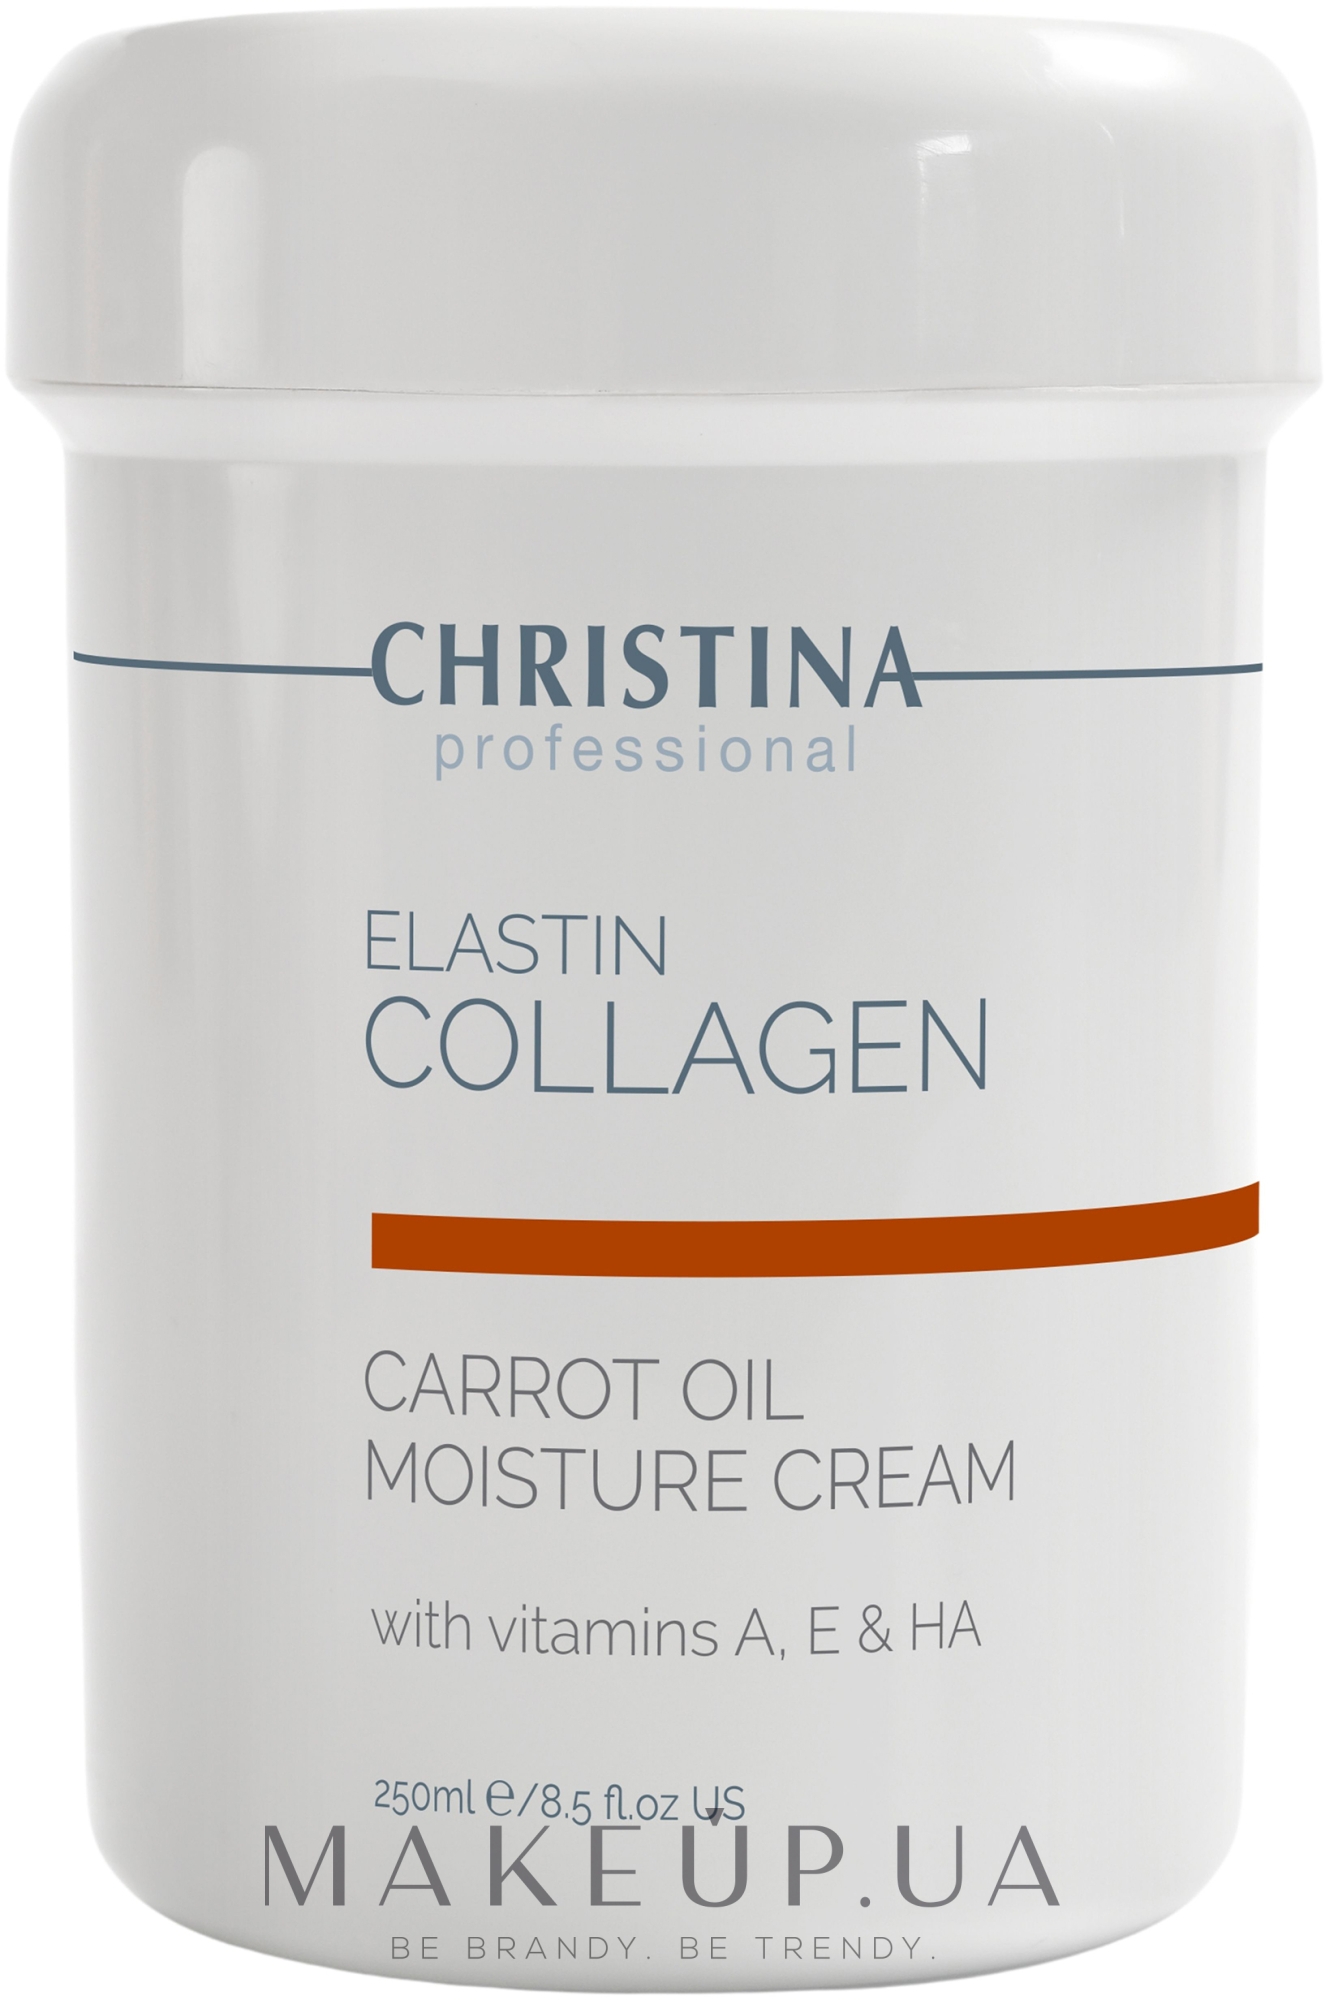 Зволожуючий крем з морквяним маслом, колагеном і еластином для сухої шкіри - Christina Elastin Collagen Carrot Oil Moisture Cream — фото 250ml